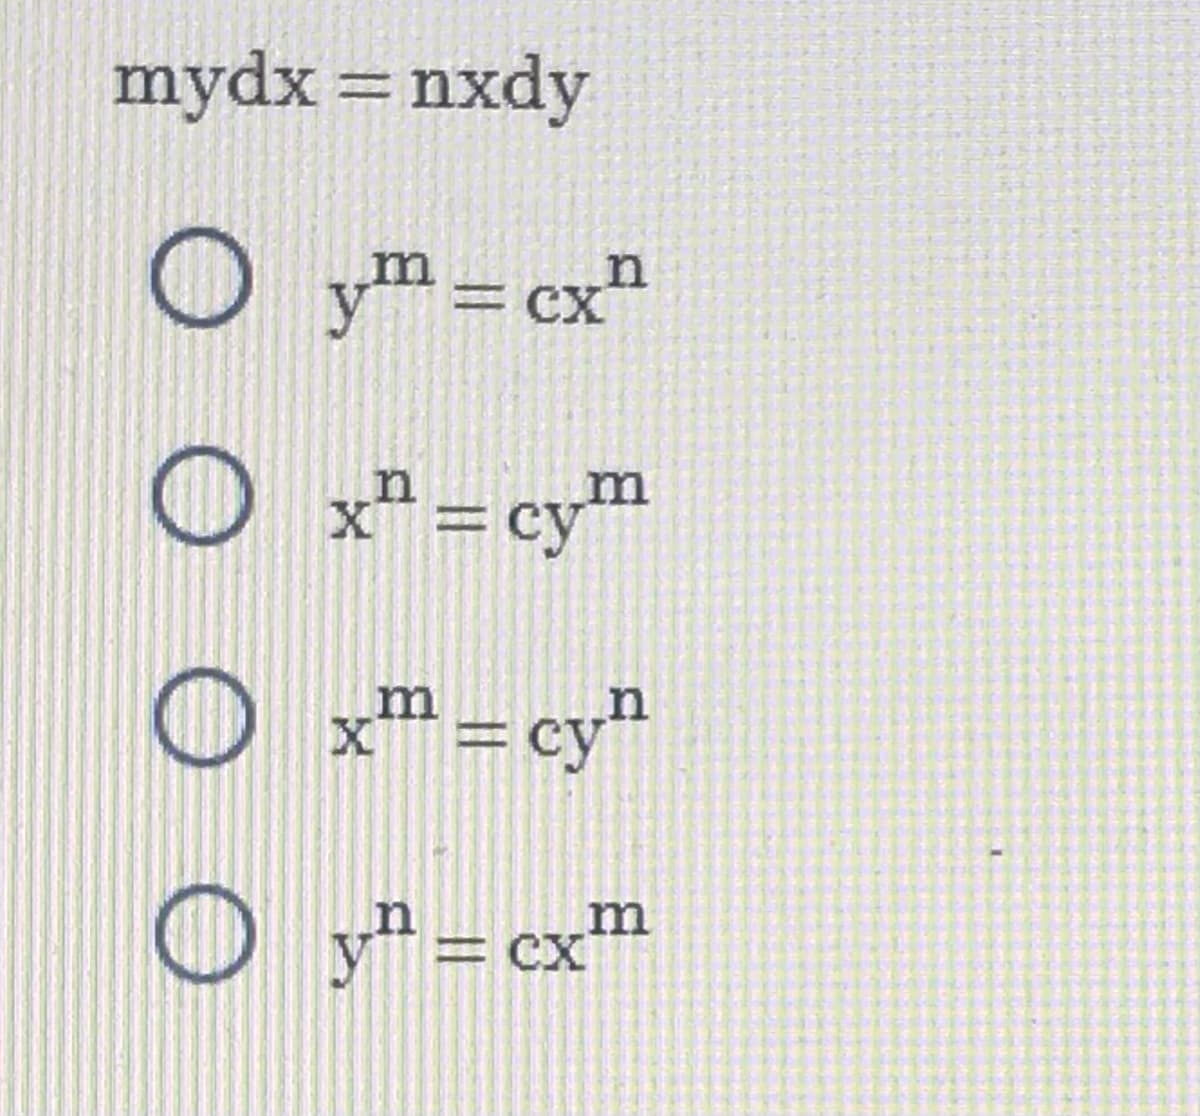 mydx = nxdy
O оо
ym=cxn
x² = cy™
n
xm=cy"
Dy"=
y = cxm